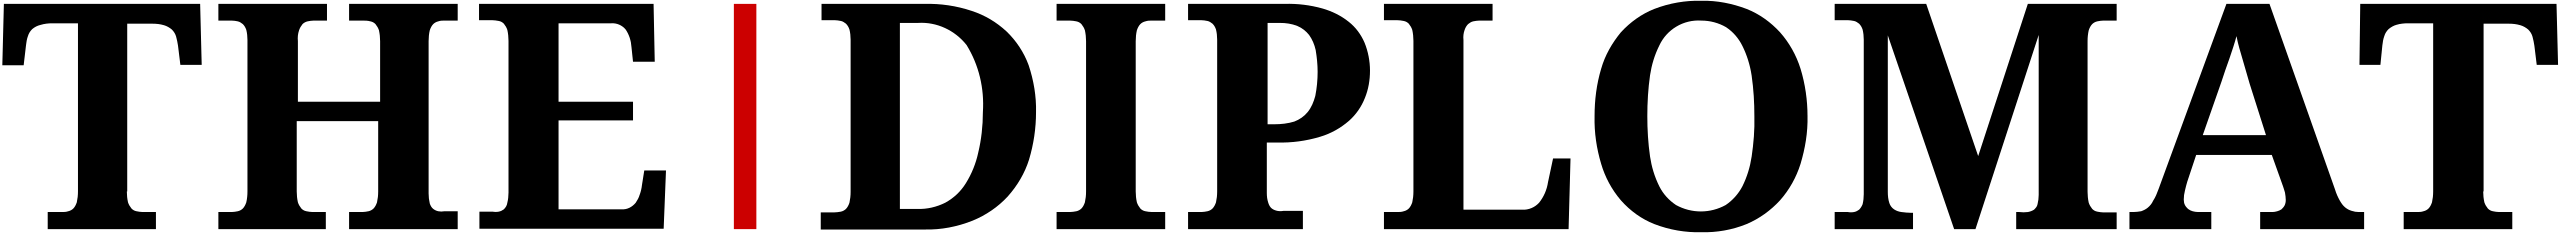 The Diplomat logo